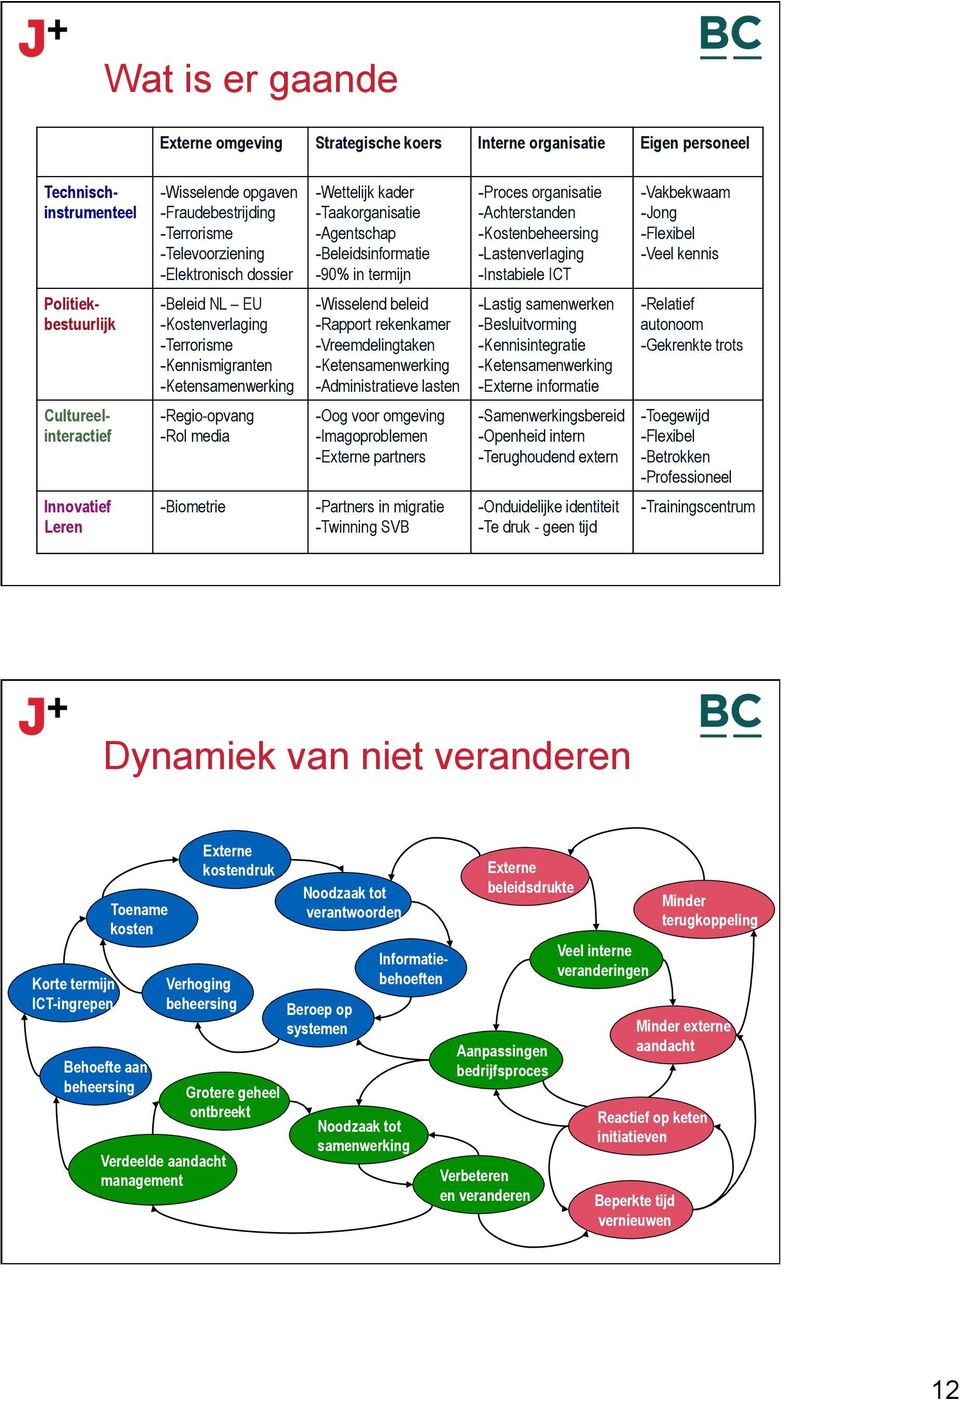 Jong - Flexibel - Veel kennis Politiekbestuurlijk - Beleid NL EU - Kostenverlaging - Terrorisme - Kennismigranten - Ketensamenwerking - Wisselend beleid - Rapport rekenkamer - Vreemdelingtaken -